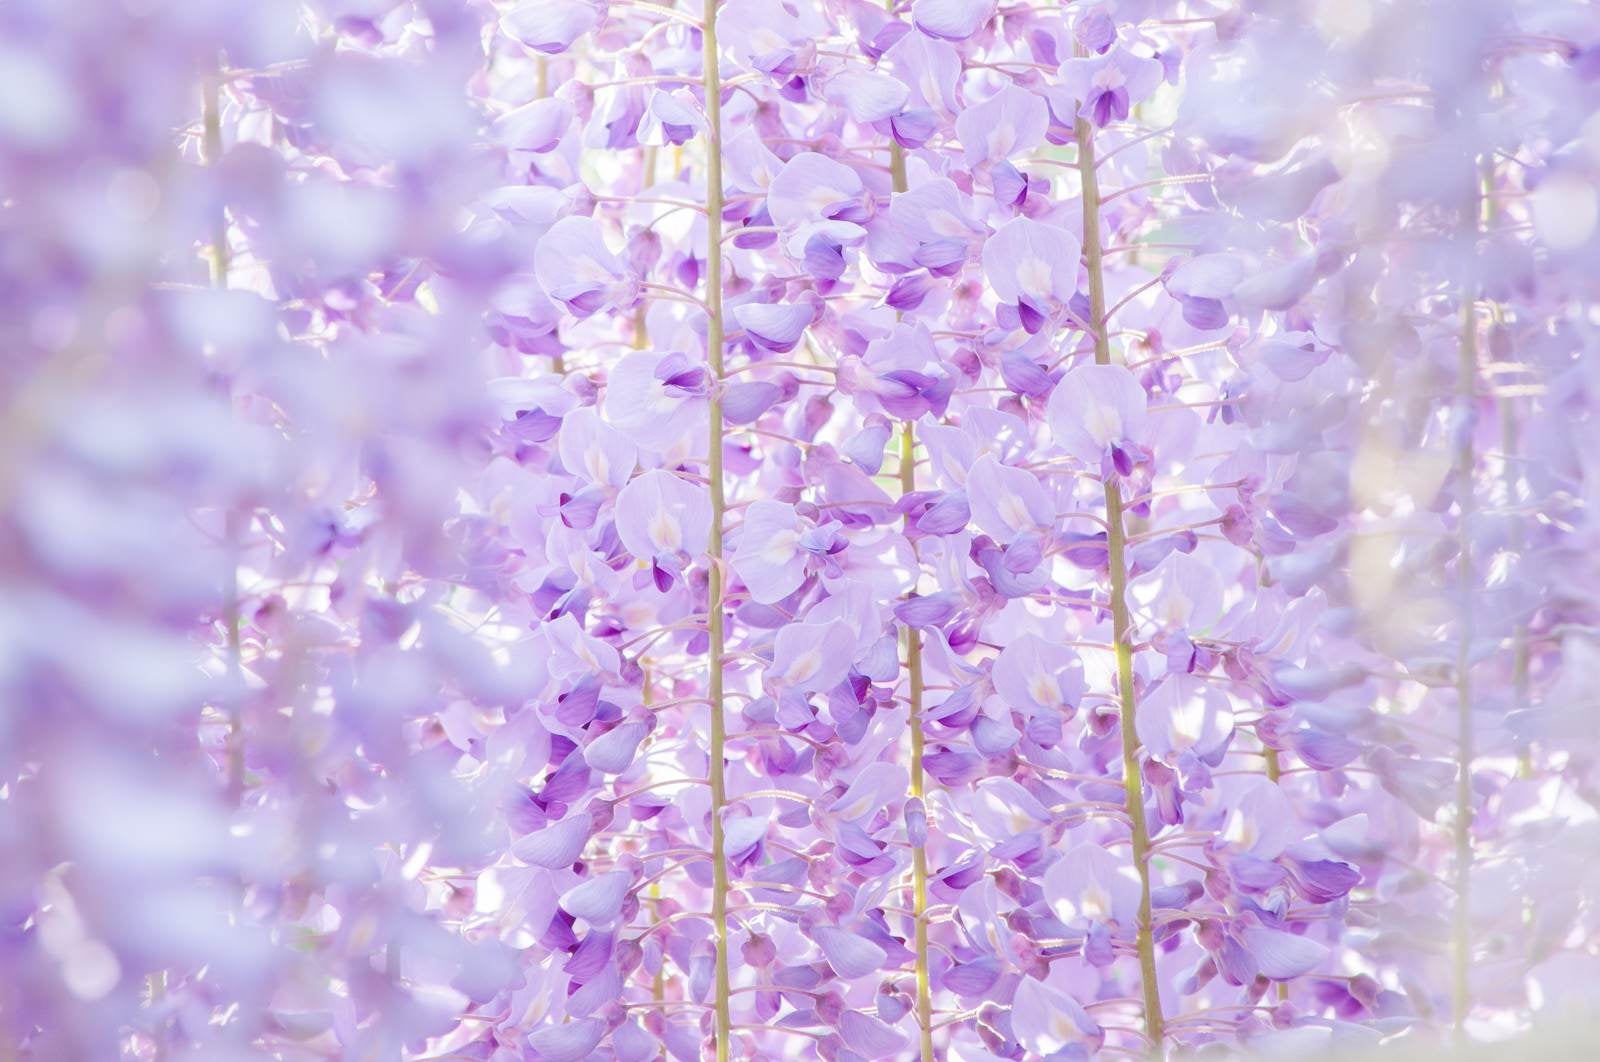 「藤の花のテクスチャ」の写真